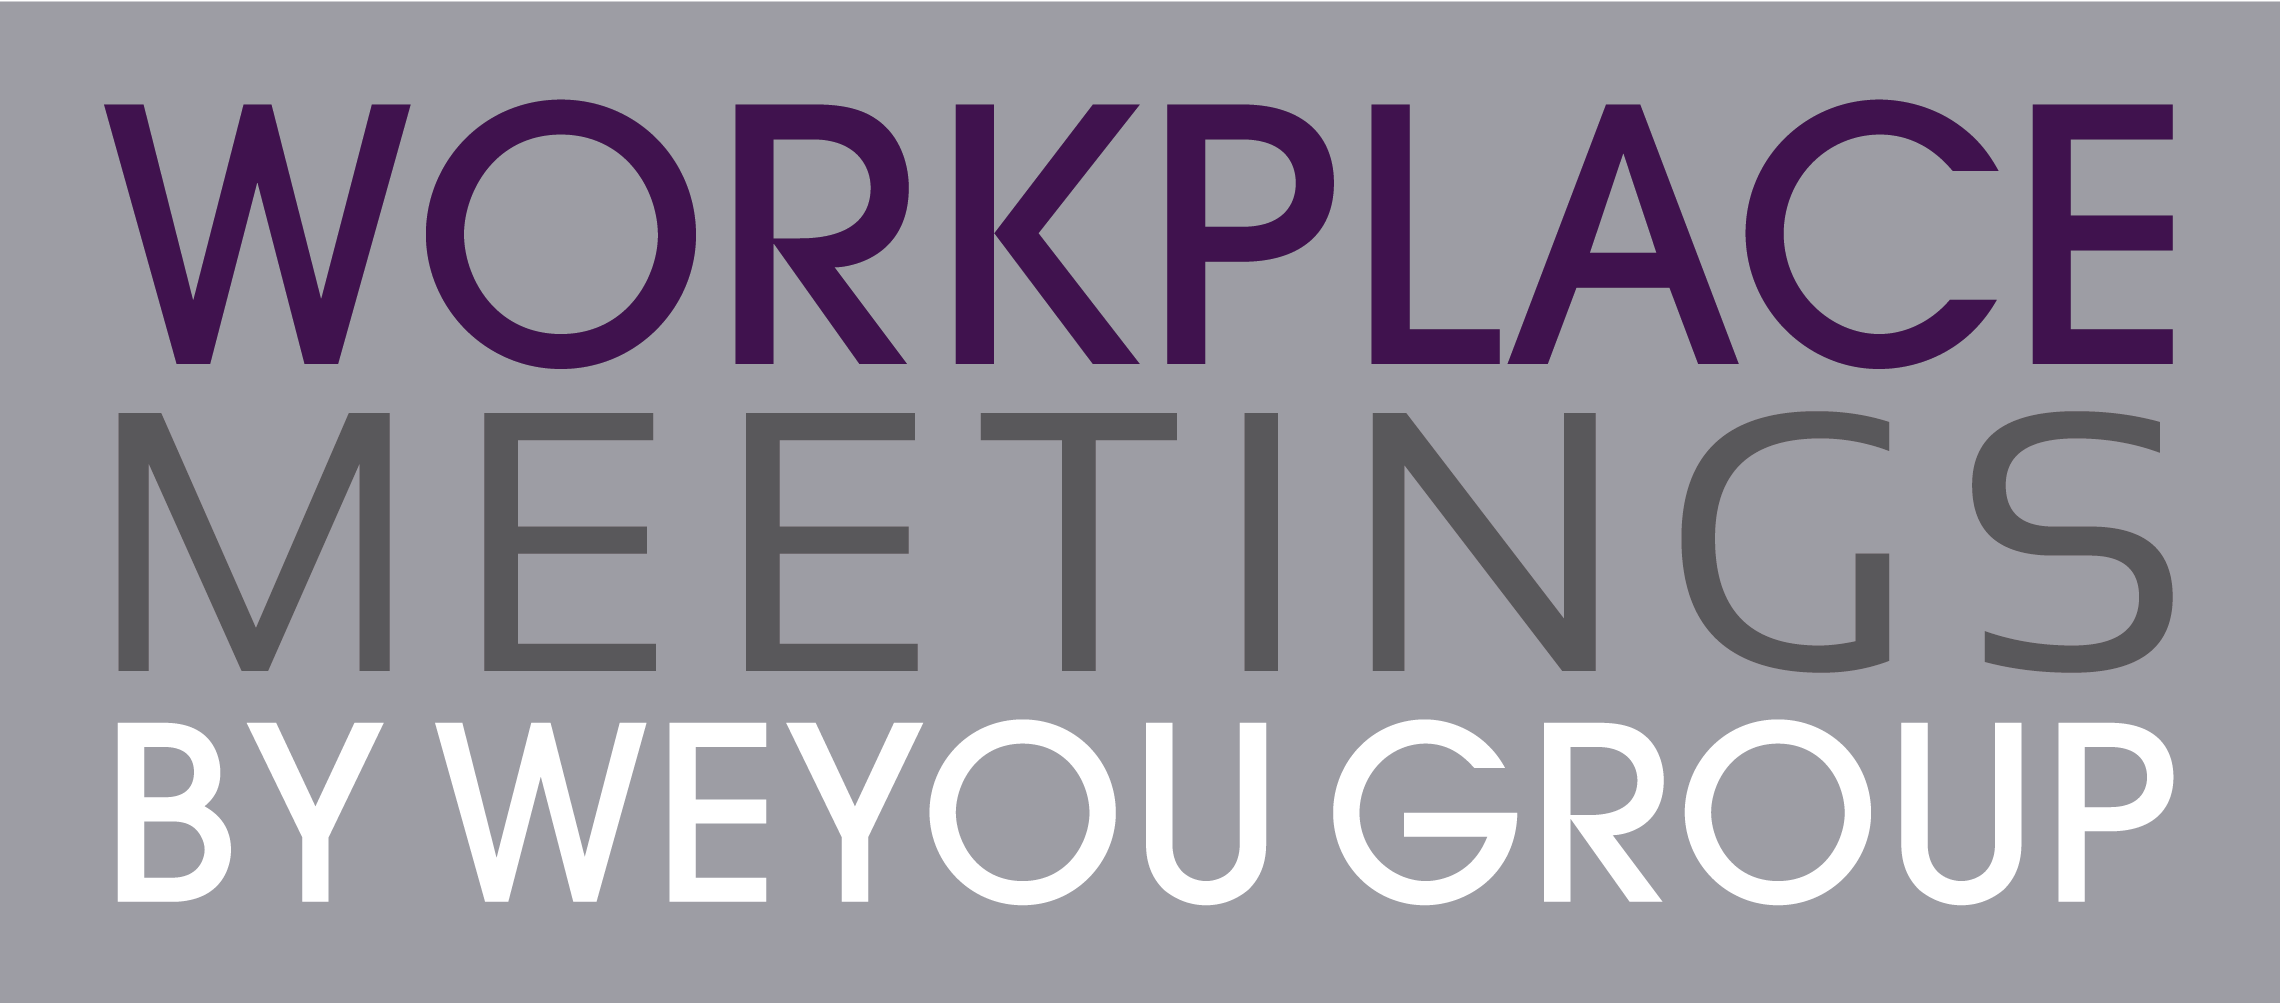 Workplace Meetings